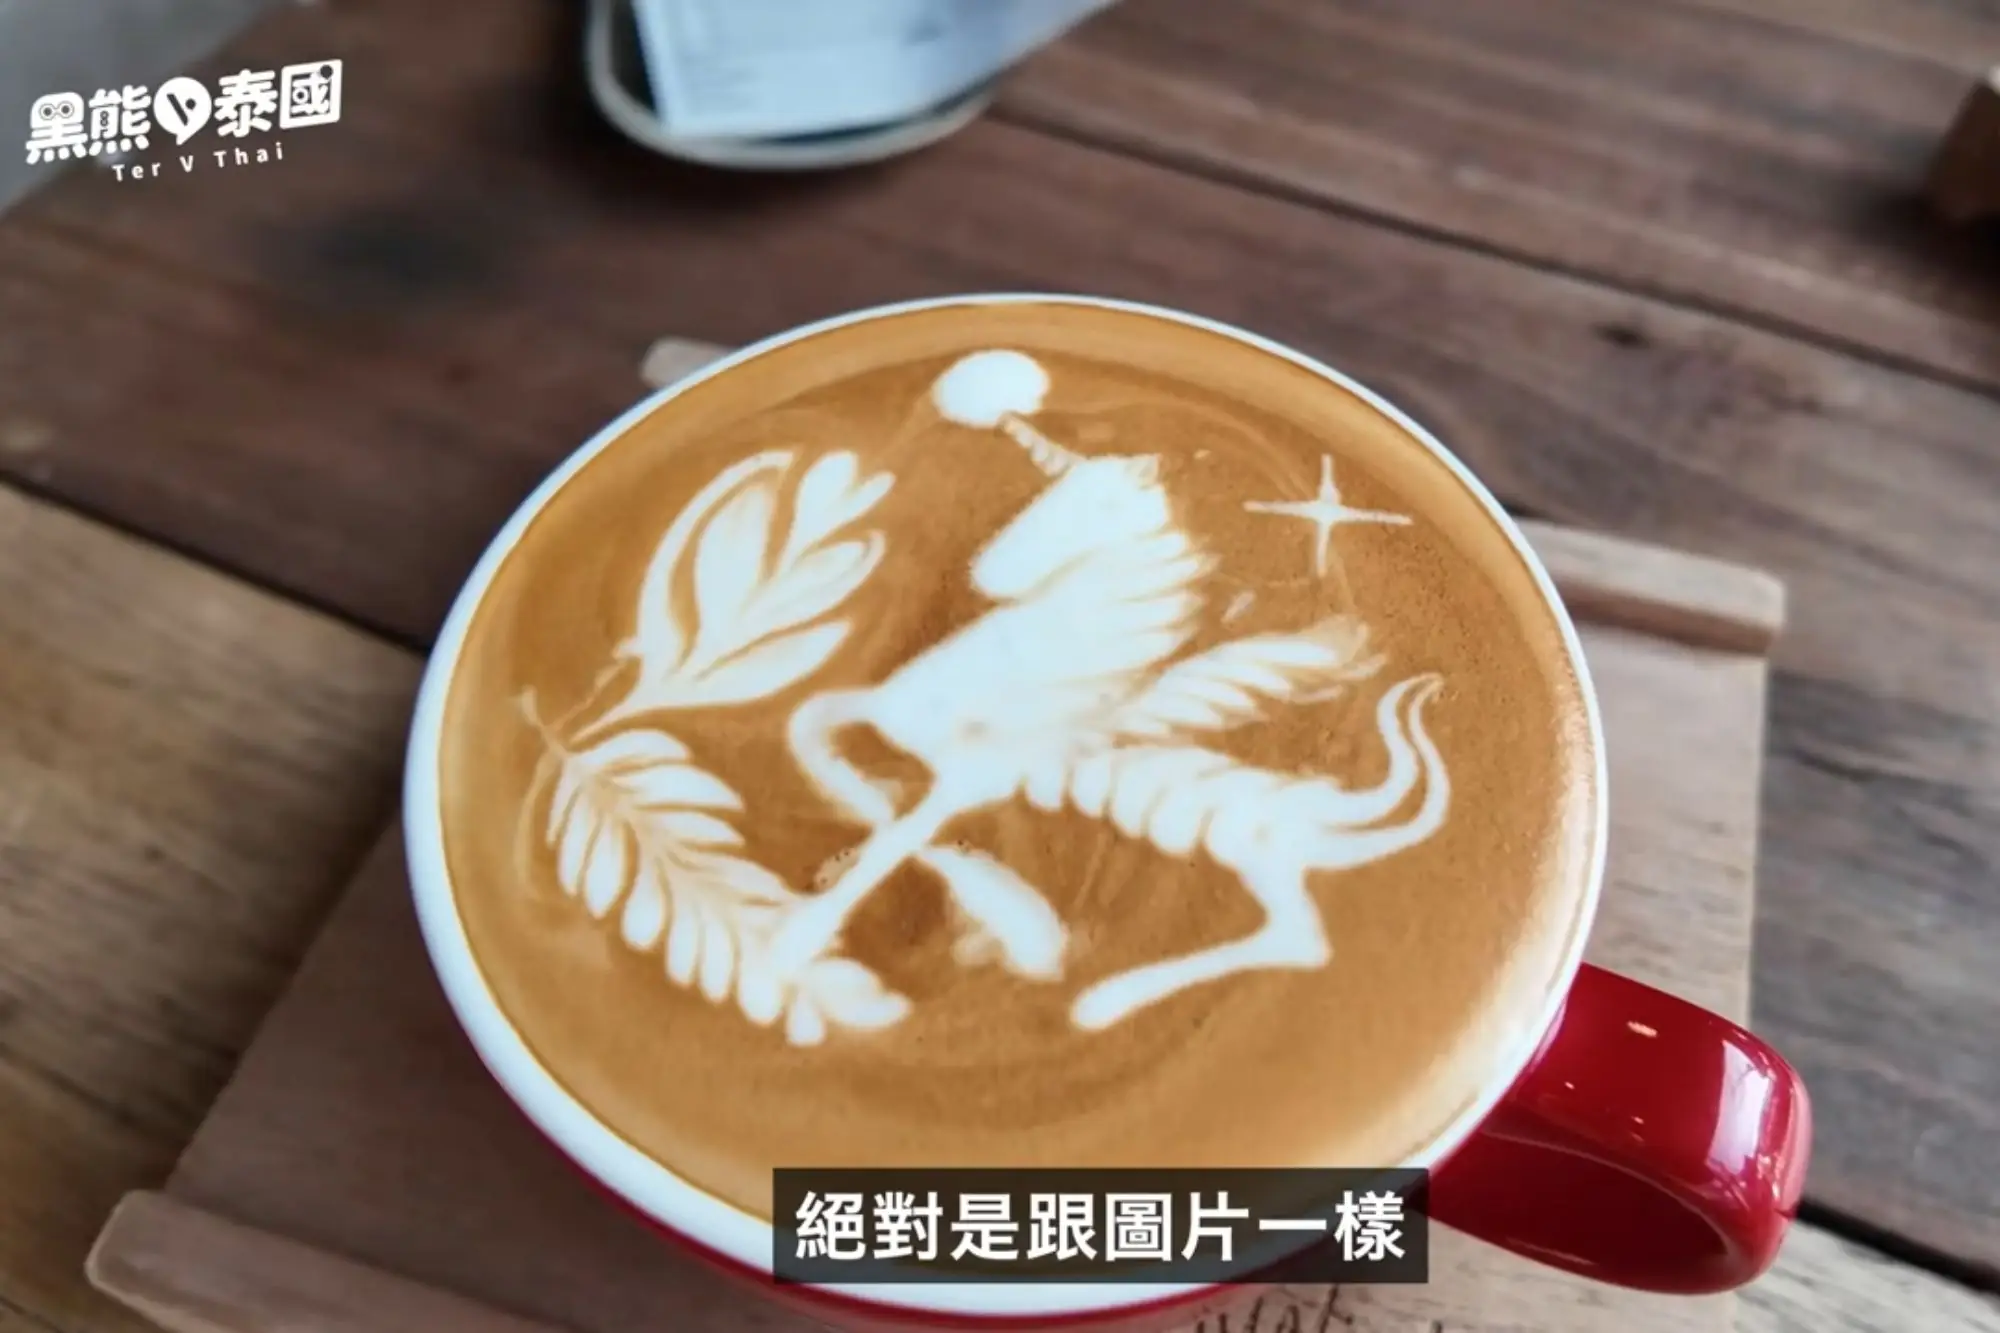 清迈尼曼世界冠军咖啡拉花（来源：黑熊V泰国影片）